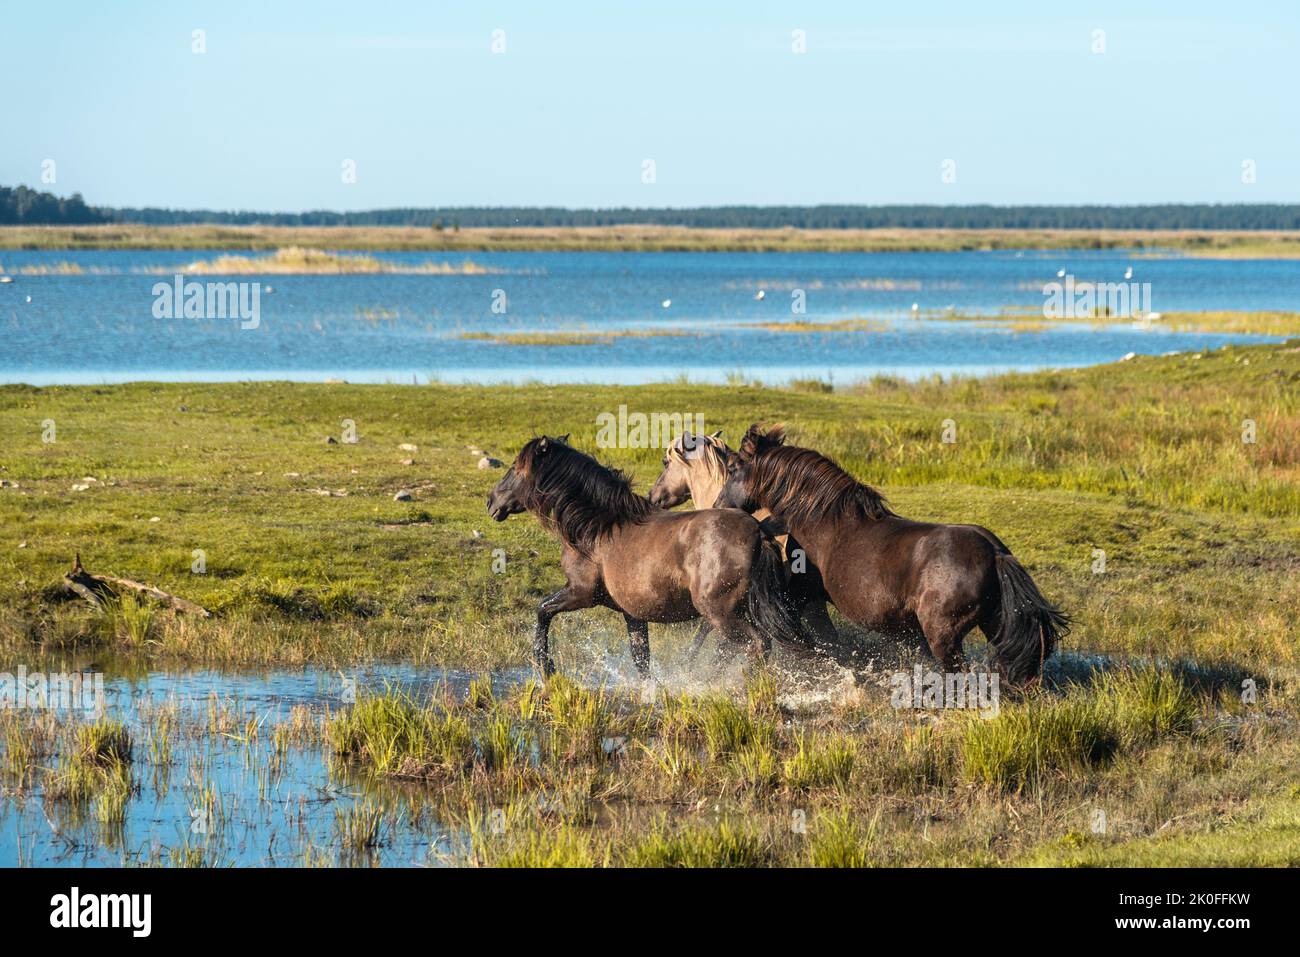 Trois chevaux semi-sauvages konik polski sont en cours d'eau dans le parc naturel du lac Endure en Lettonie Banque D'Images